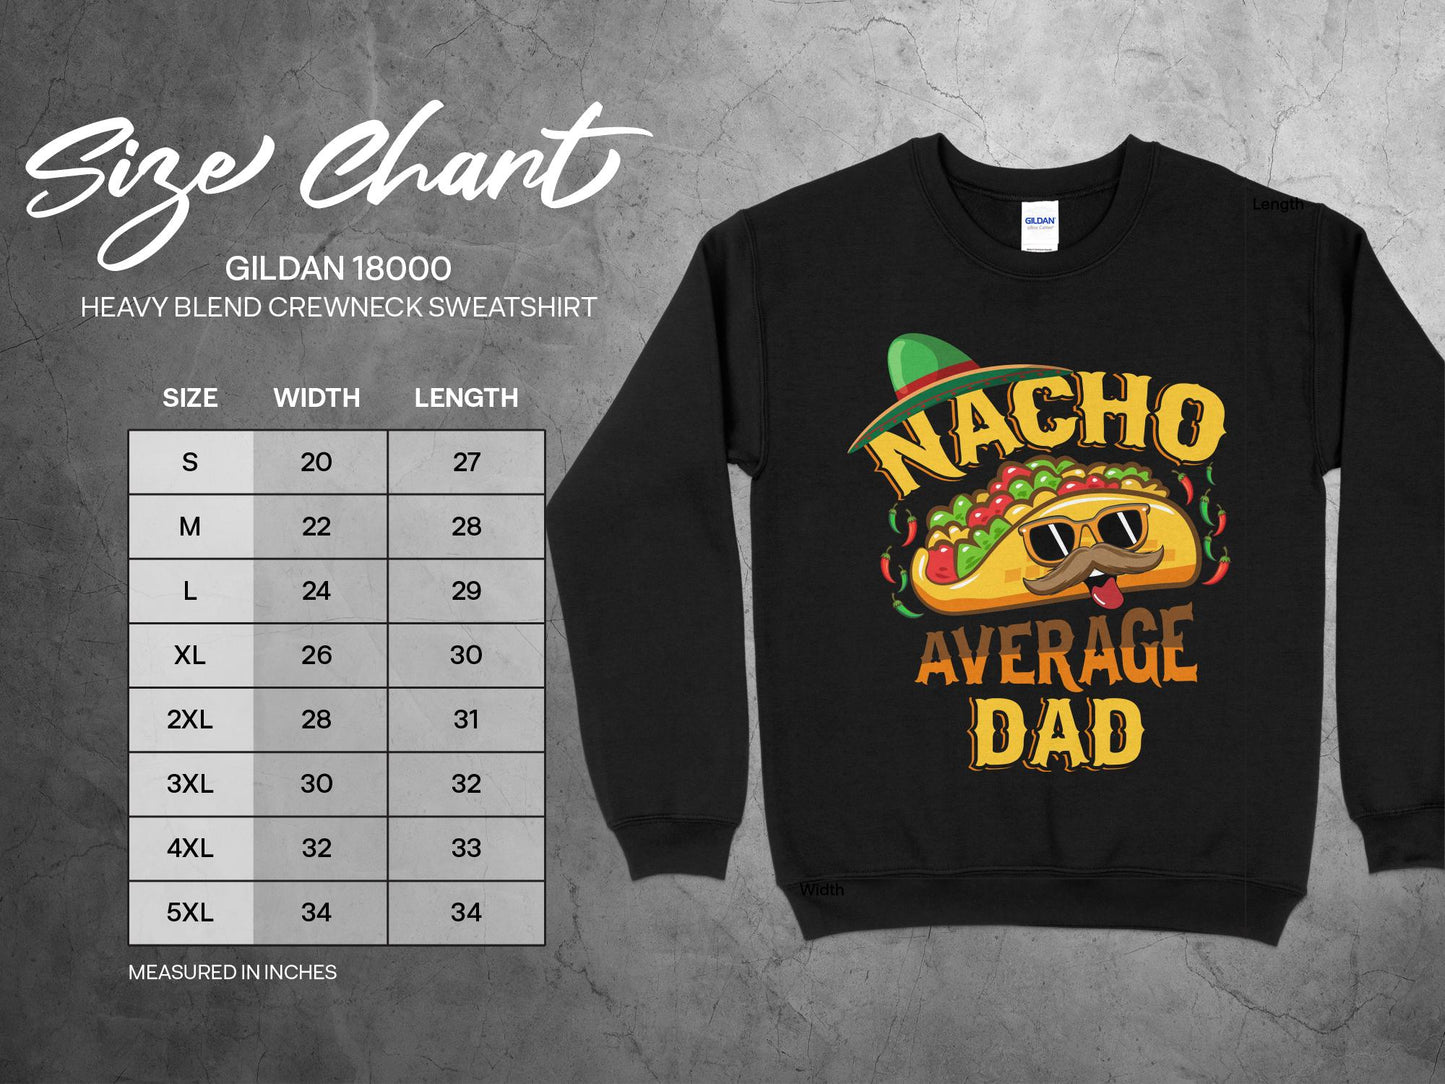 Nacho Average Dad Sweatshirt, sizing chart